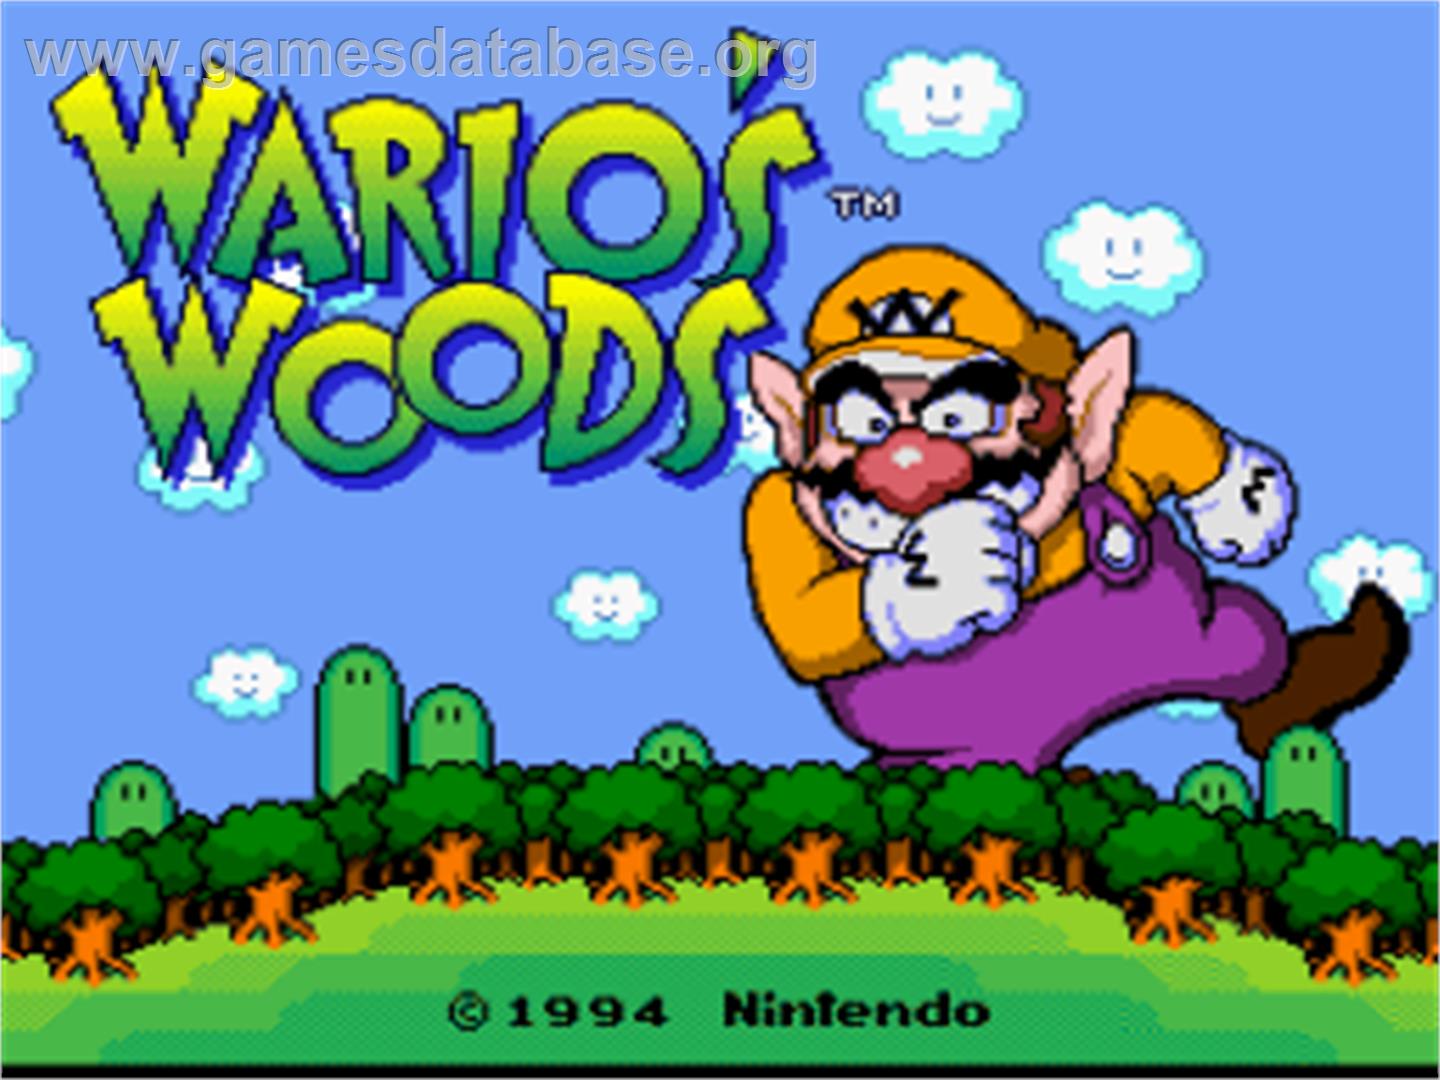 Wario's Woods - Nintendo SNES - Artwork - Title Screen